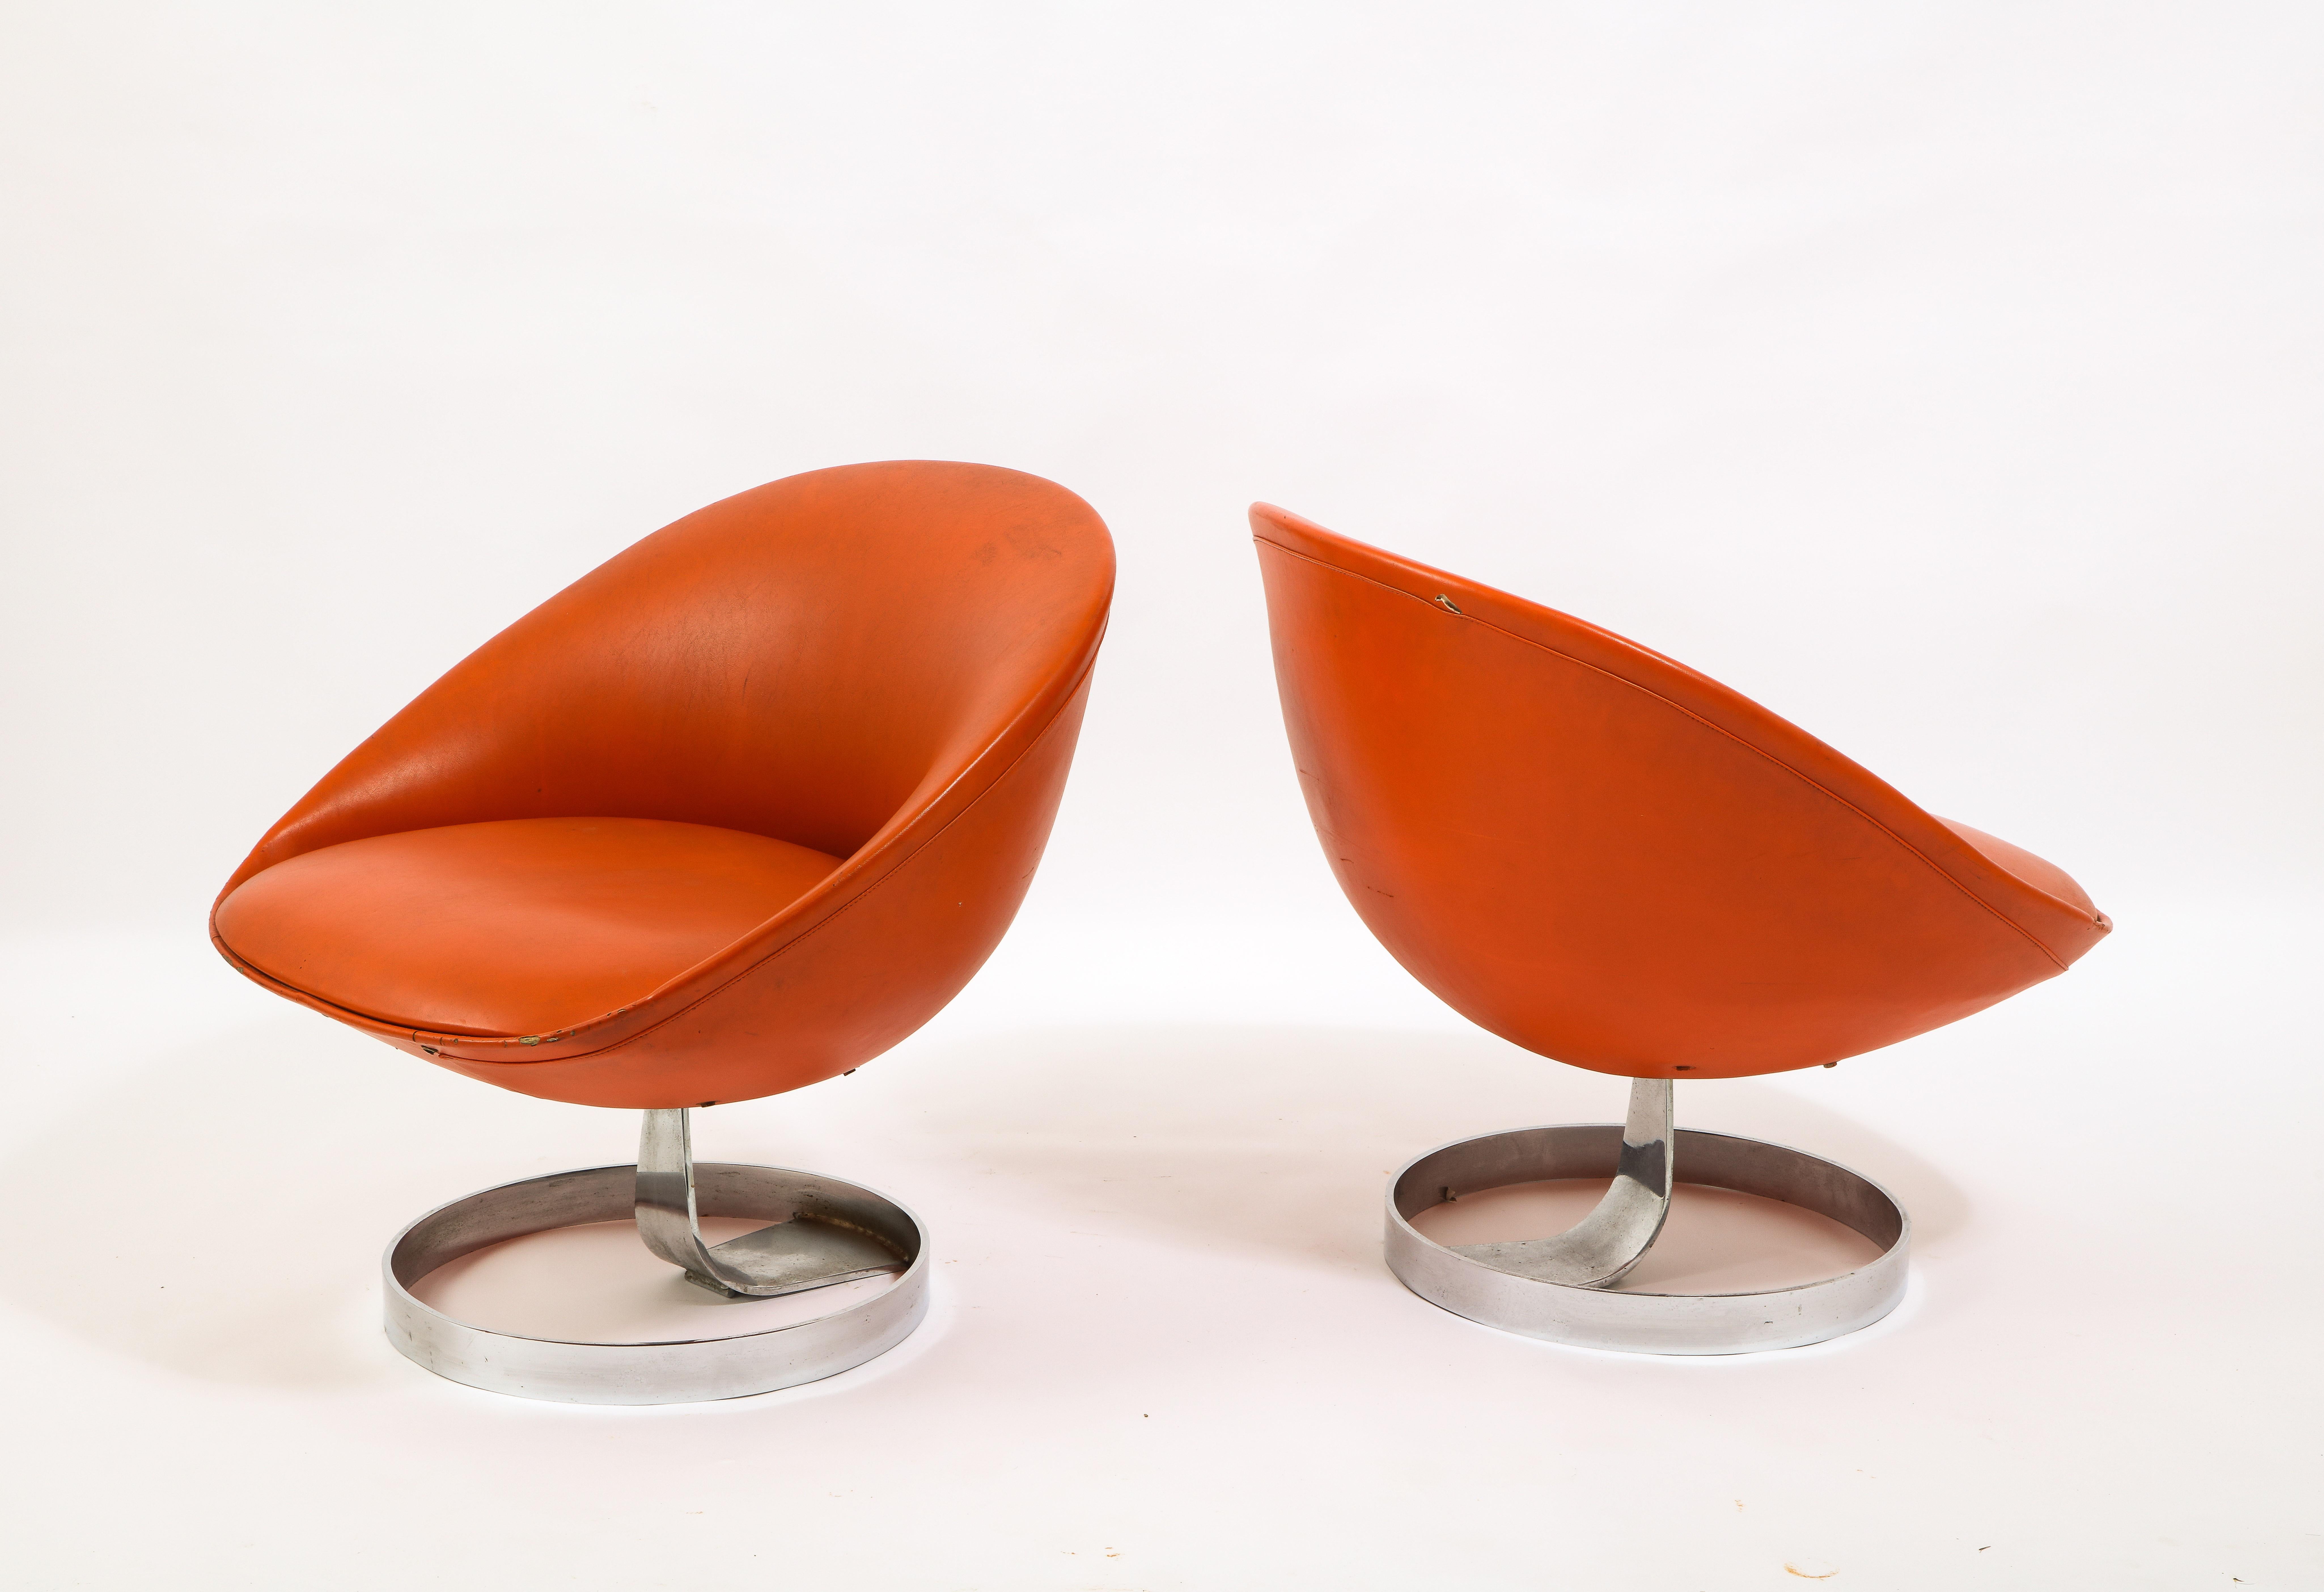 Rare paire de chaises longues K1 pour Alpha Industries. Maurice Calka est bien connu pour ses bureaux boomerang en fibre de verre, mais cette paire de chaises est un parfait exemple de sa créativité. La coque est formée d'aluminium reposant sur une